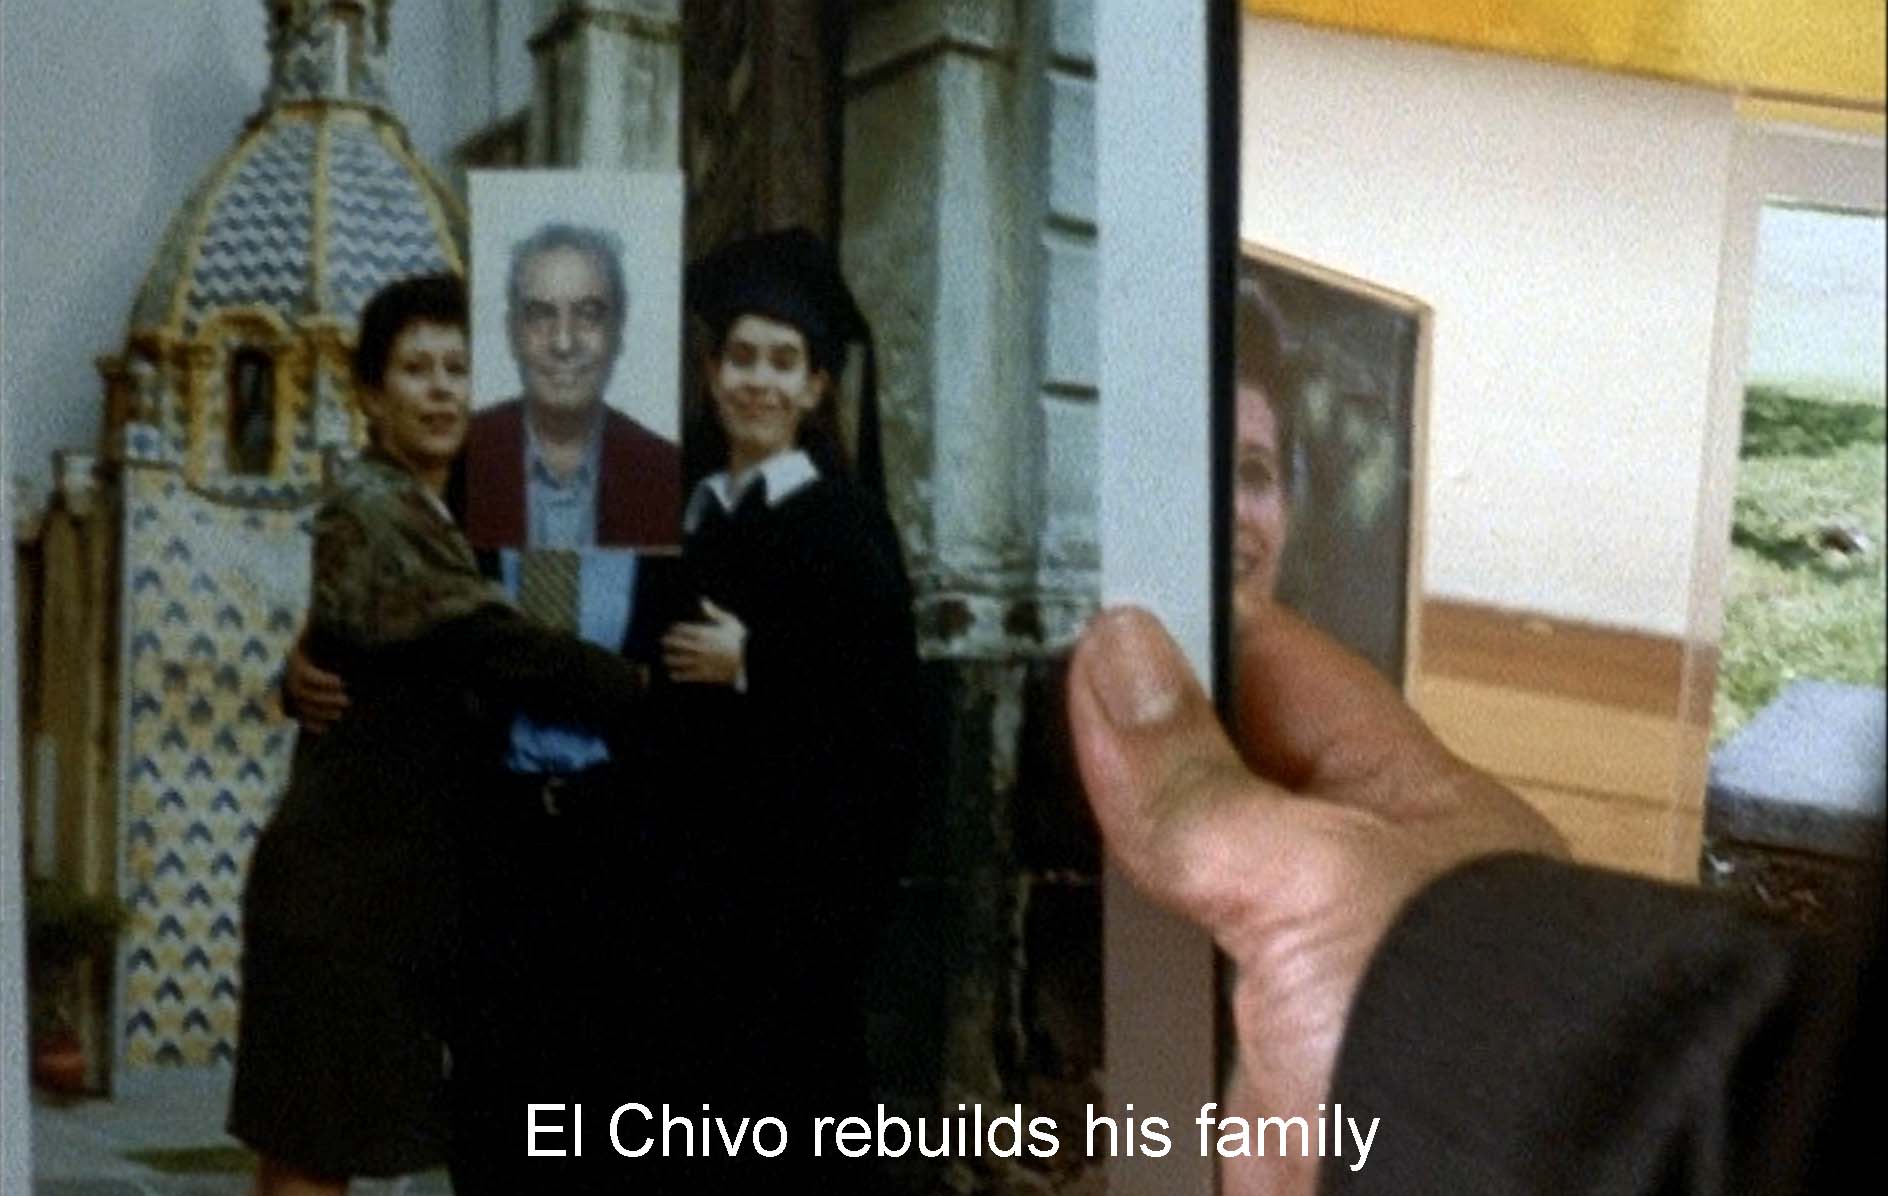 El Chivo rebuilds his family